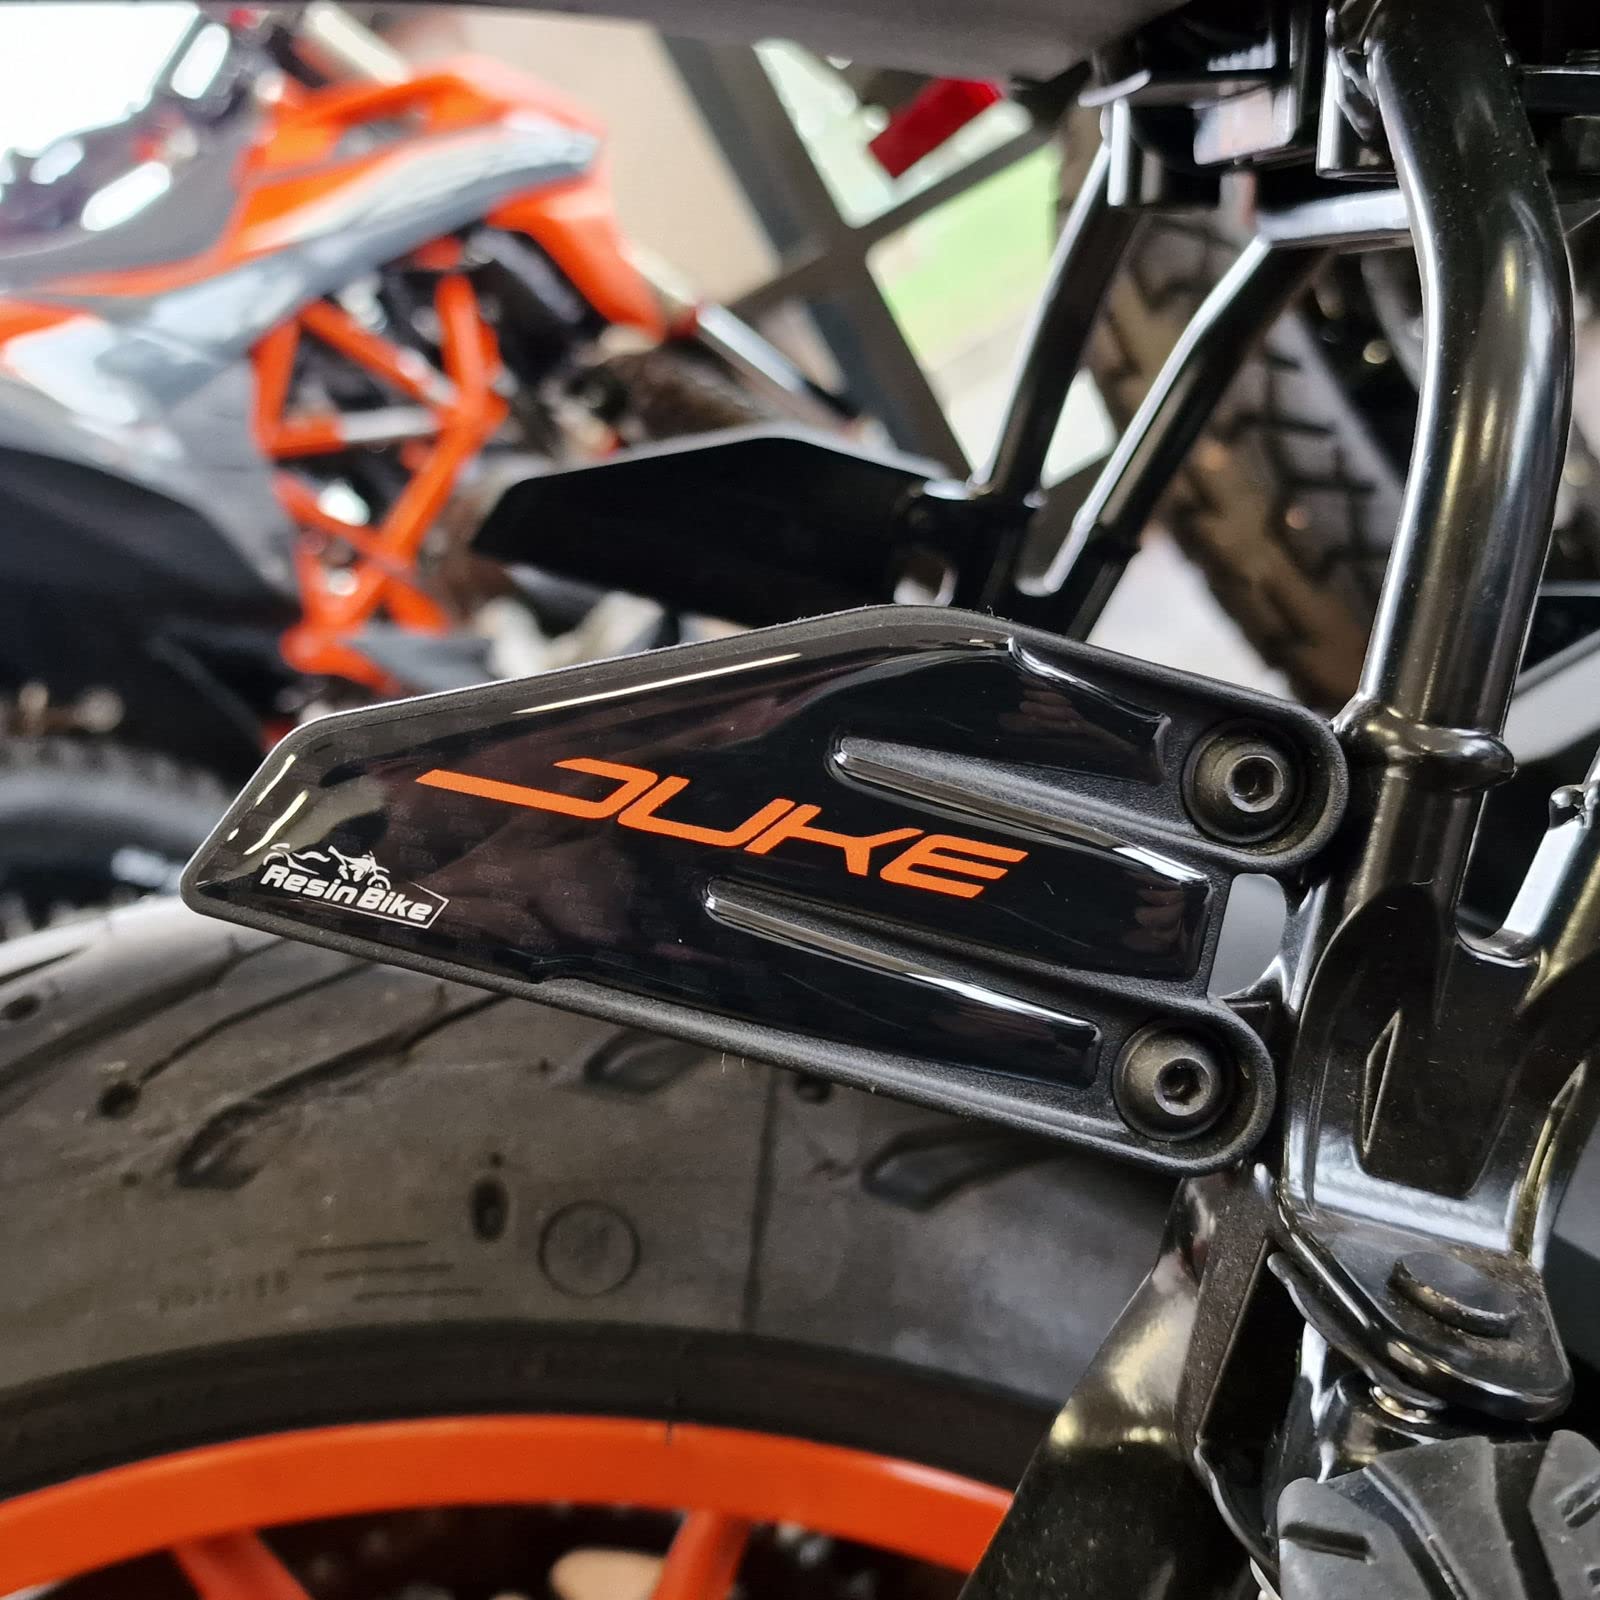 Resin Bike Aufkleber für Motorrad Kompatibel mit KTM Duke 125-200 - 250-390 2021 2022. Einstiegsleistenschutz vor Stößen und Kratzern. 3D-Harzklebstoff - Stickers von Resin Bike